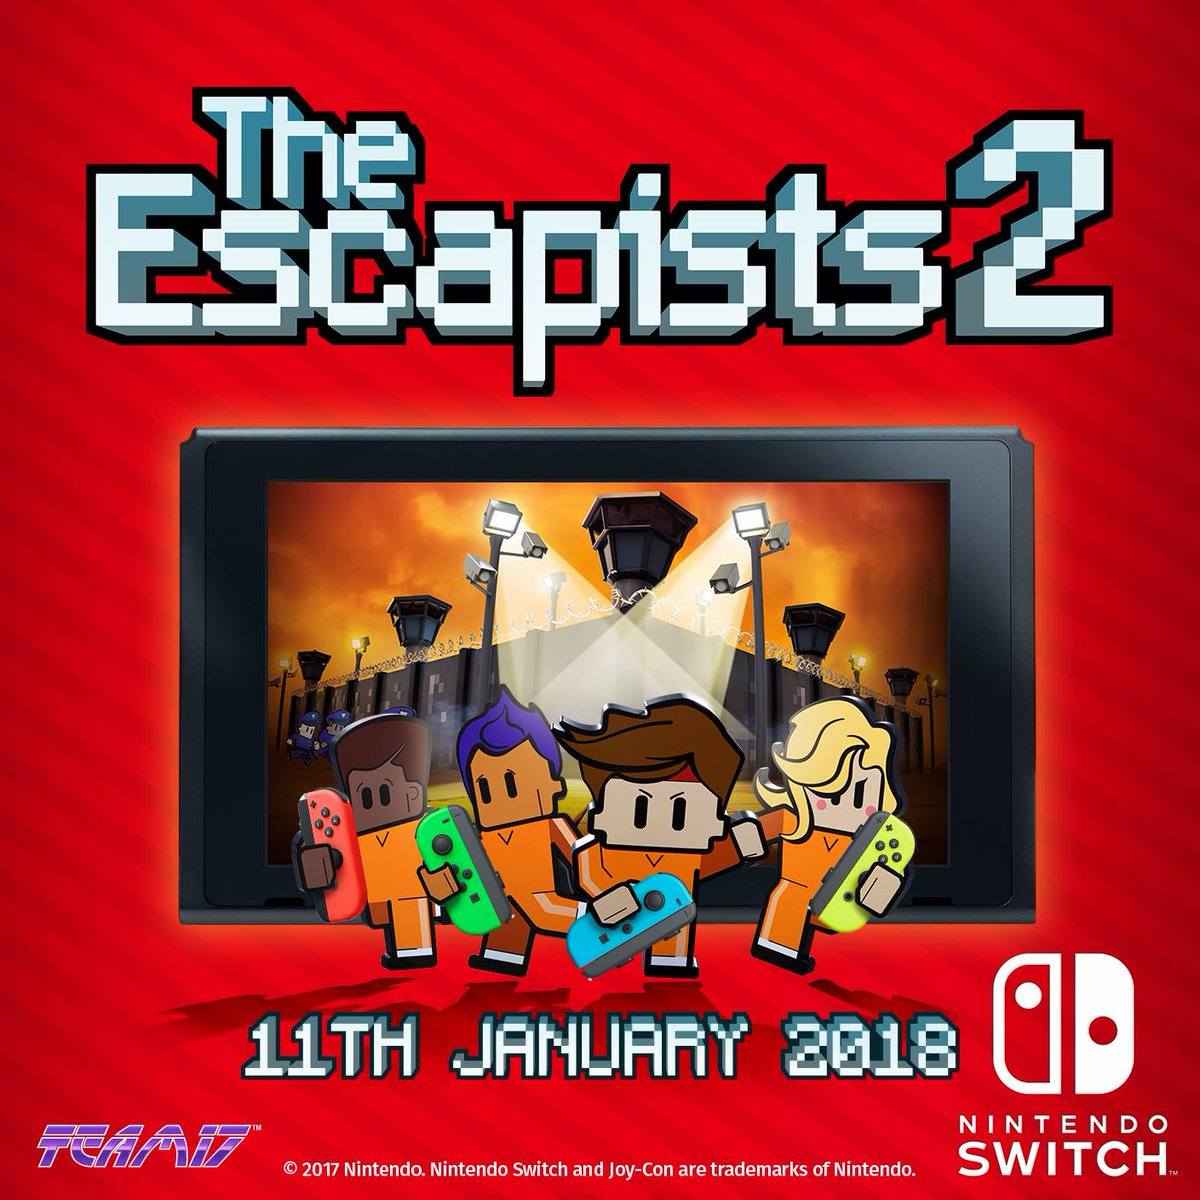 《逃脱者2》将于1月11日登陆SWITCH平台，同时支持多人合作模式，你可以在线上和其他3名玩家组队计划越狱，Switch版还可以在本地2人分屏合作游戏。